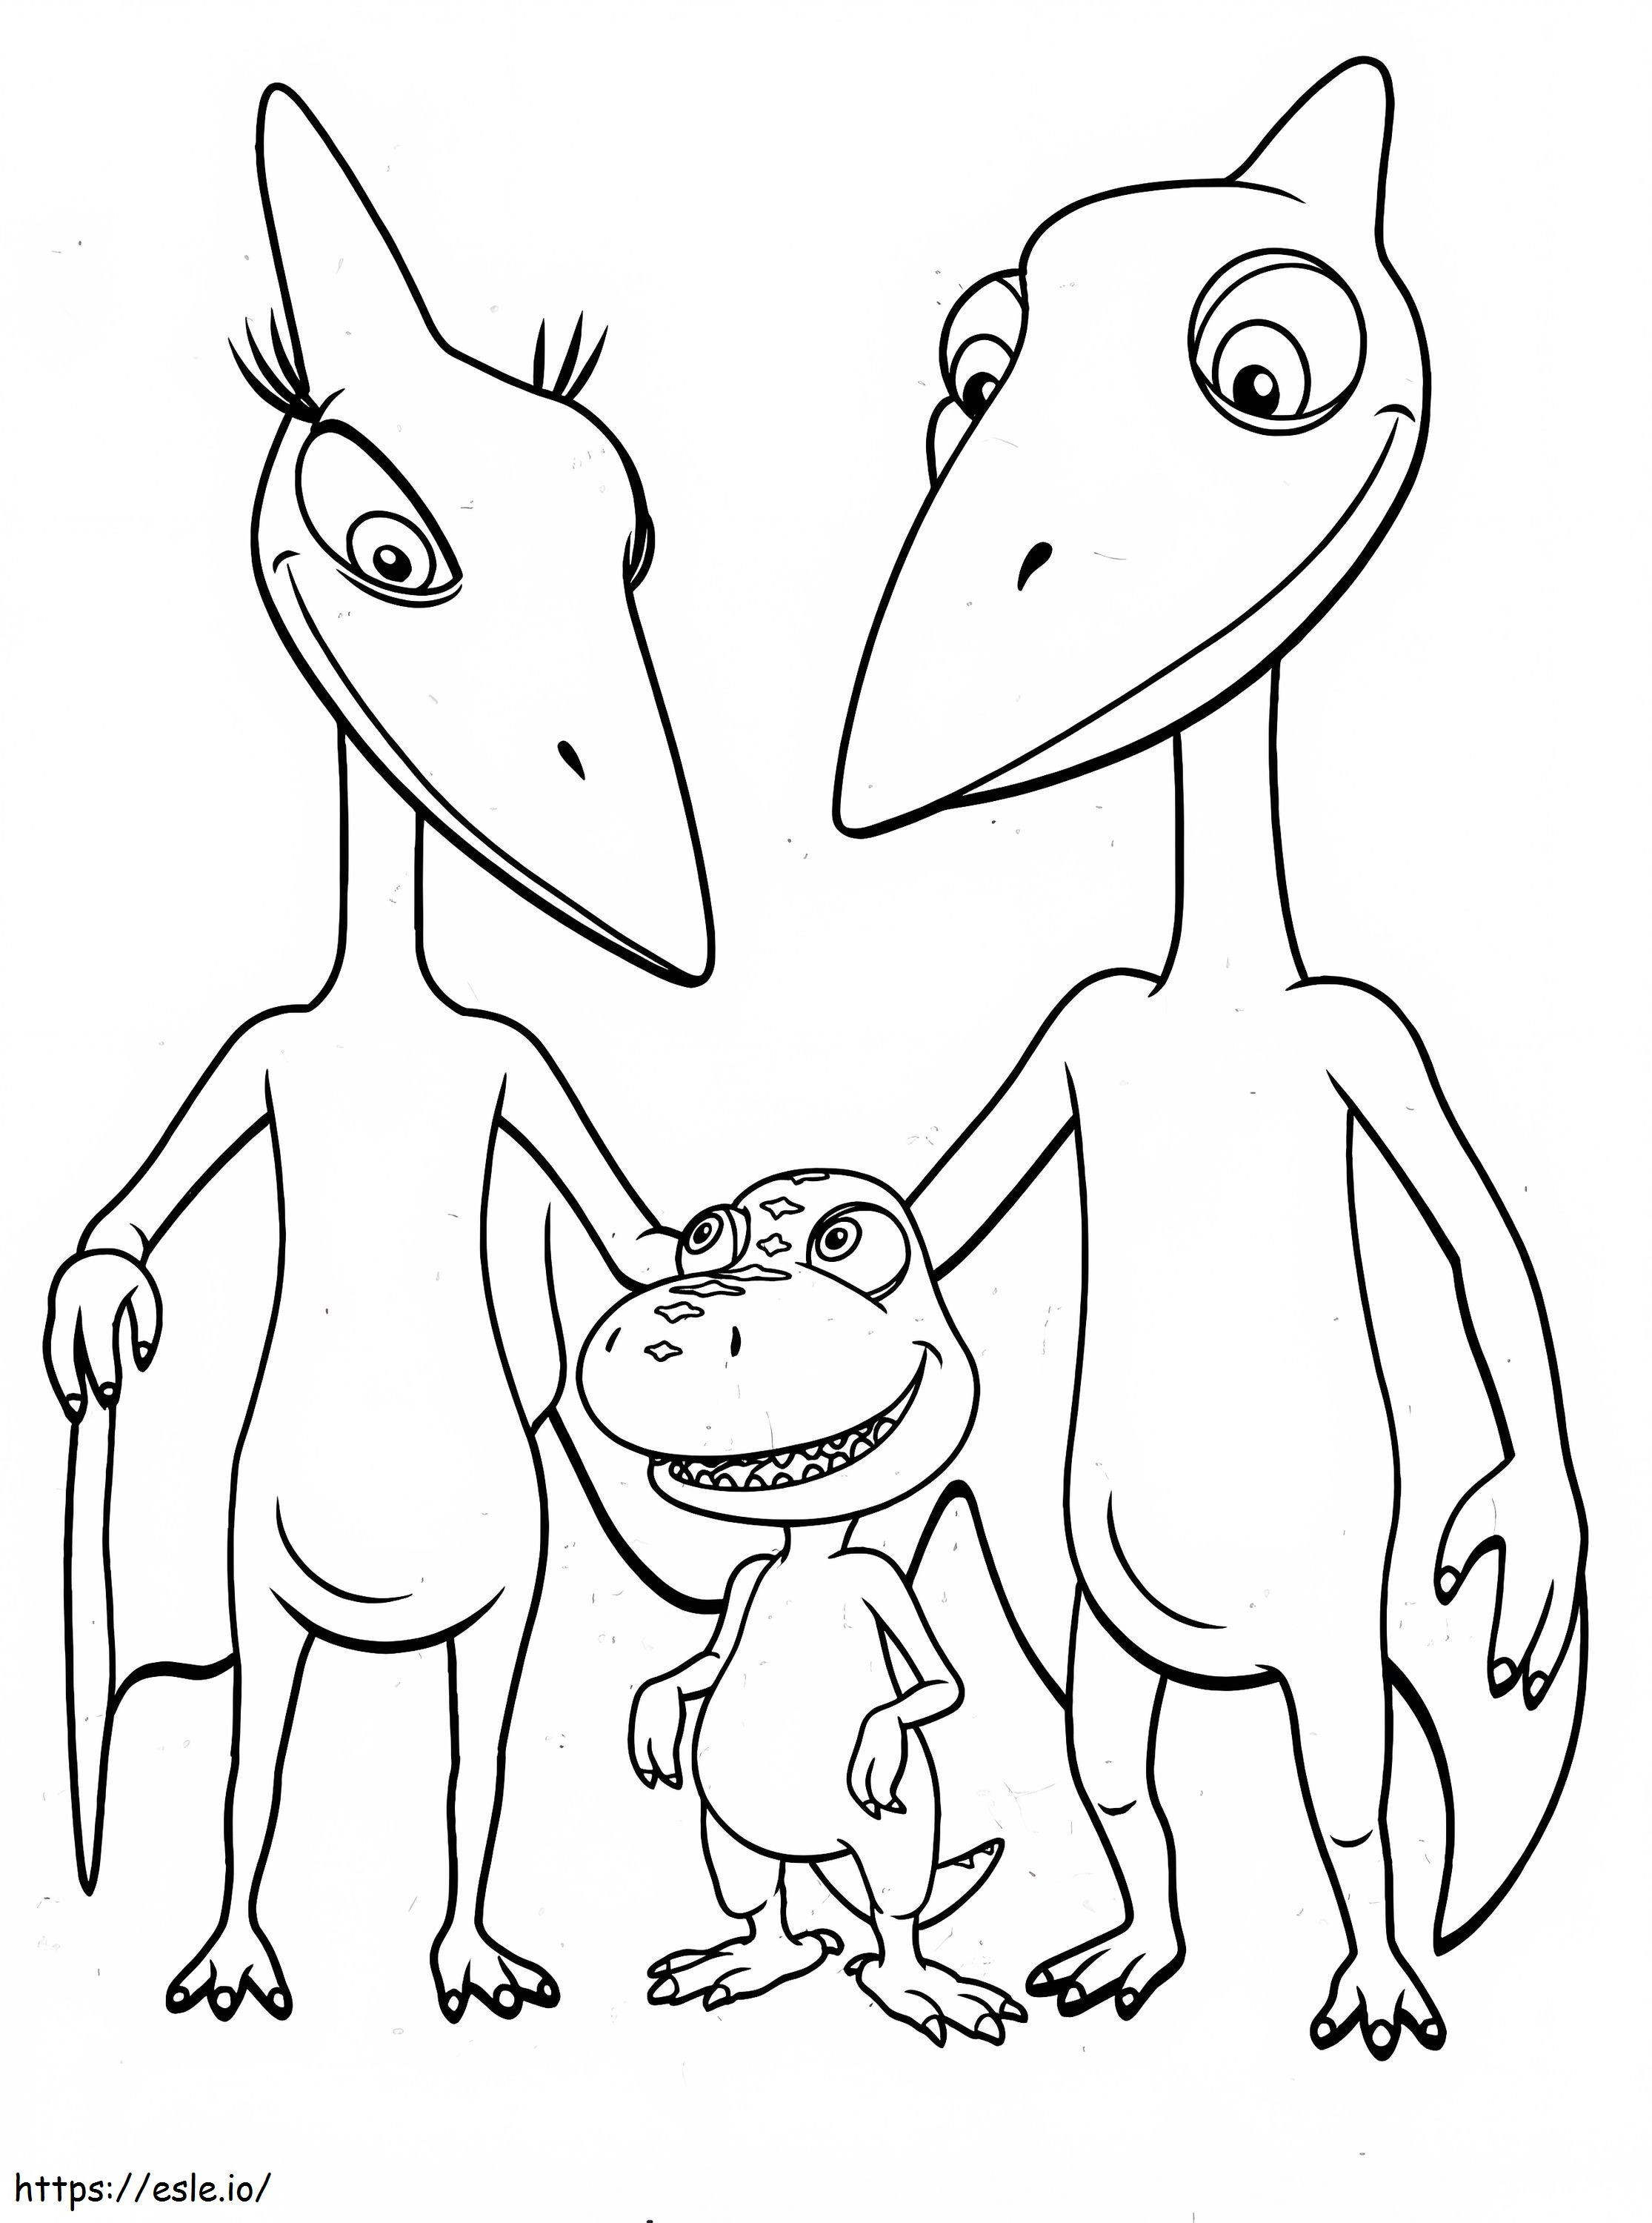 Urocza rodzina dinozaurów kolorowanka